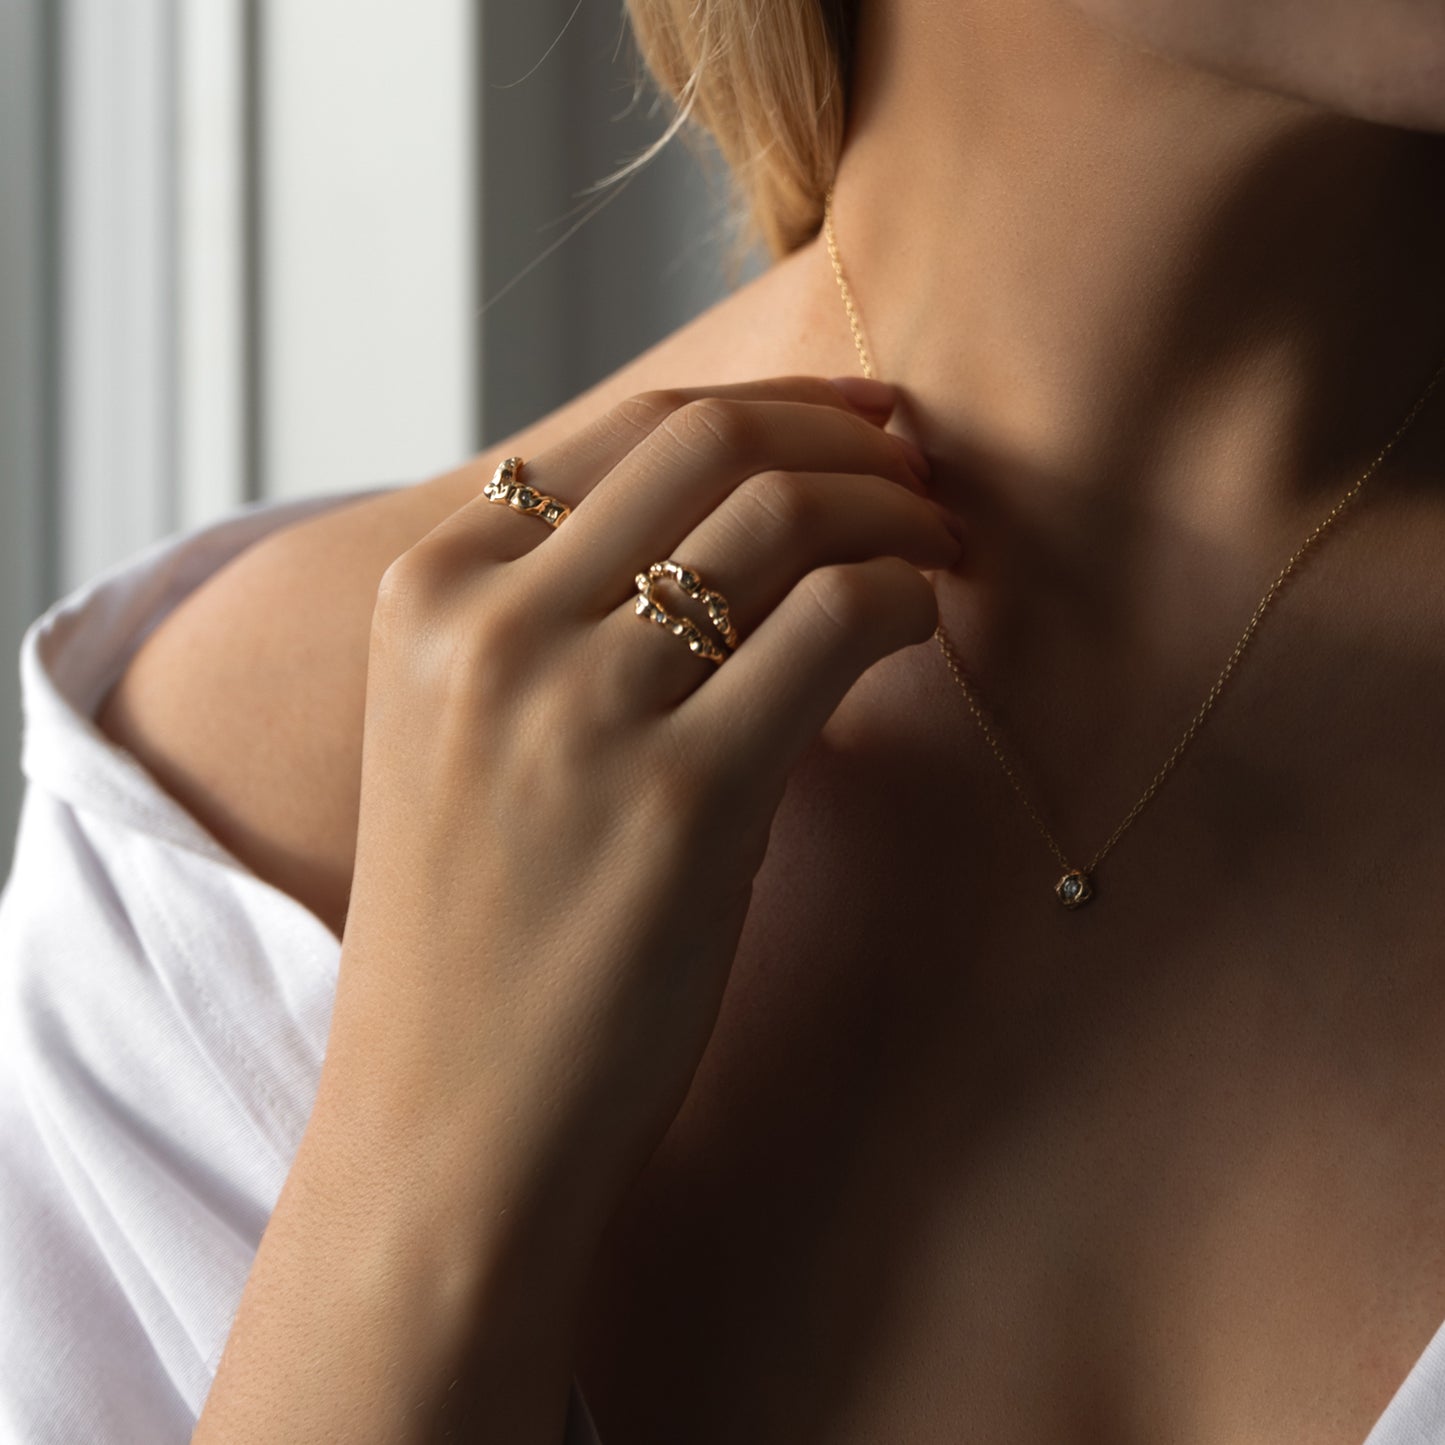 Model udsnit af torso, hånd holder guld halskæde og på hånden er der to organisk designet guld ringe med diamanter der glimter. Kvinden har en hvid skjorte på der er åben foran.  